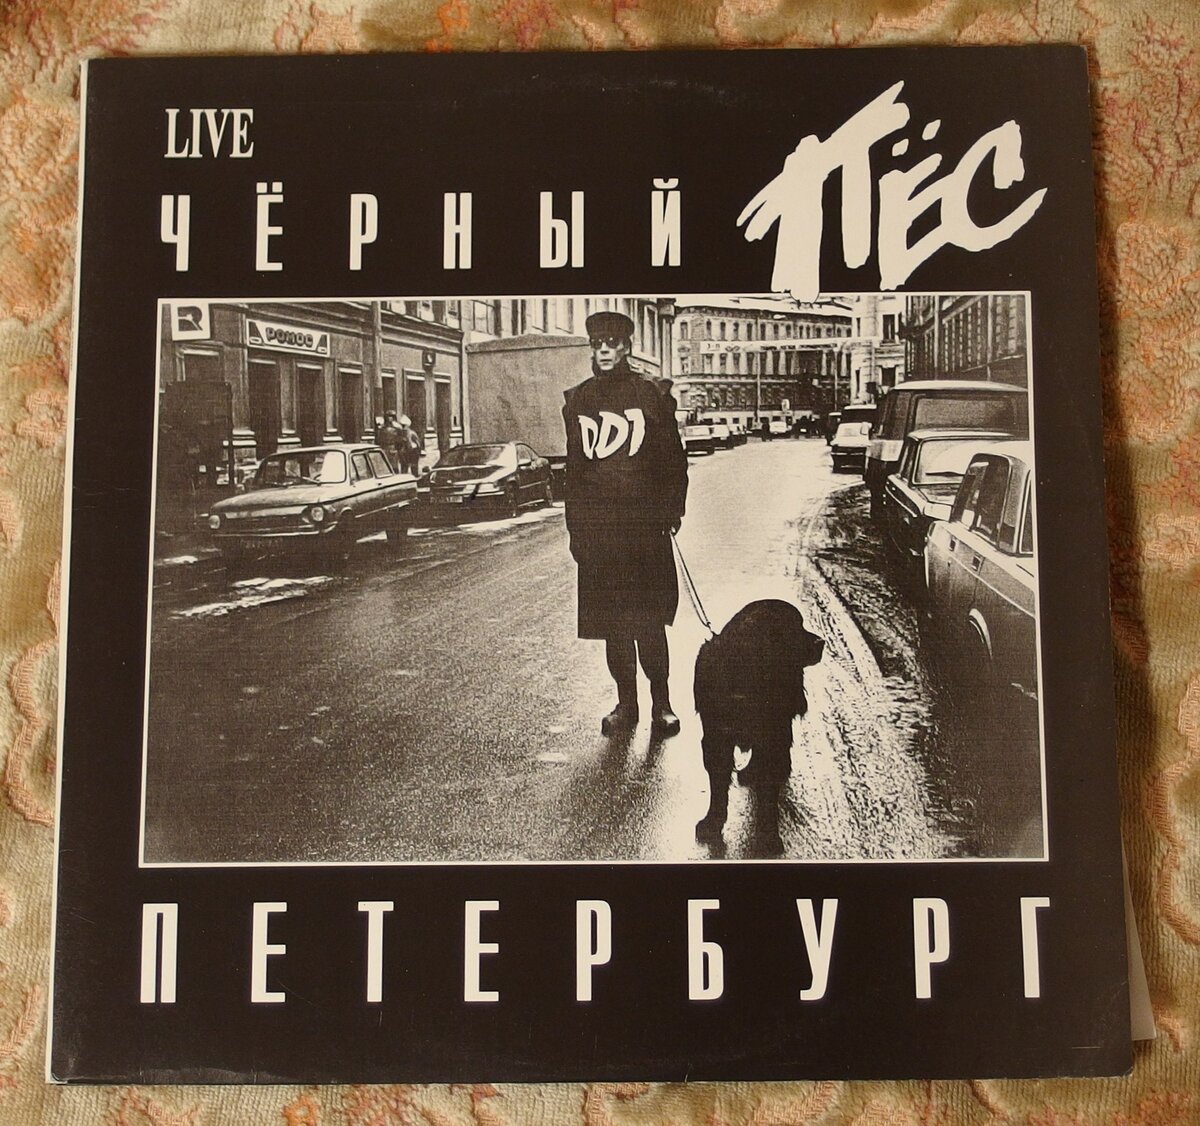 Черный пес песни. ДДТ 1984 - периферия. ДДТ любовь обложка альбома.